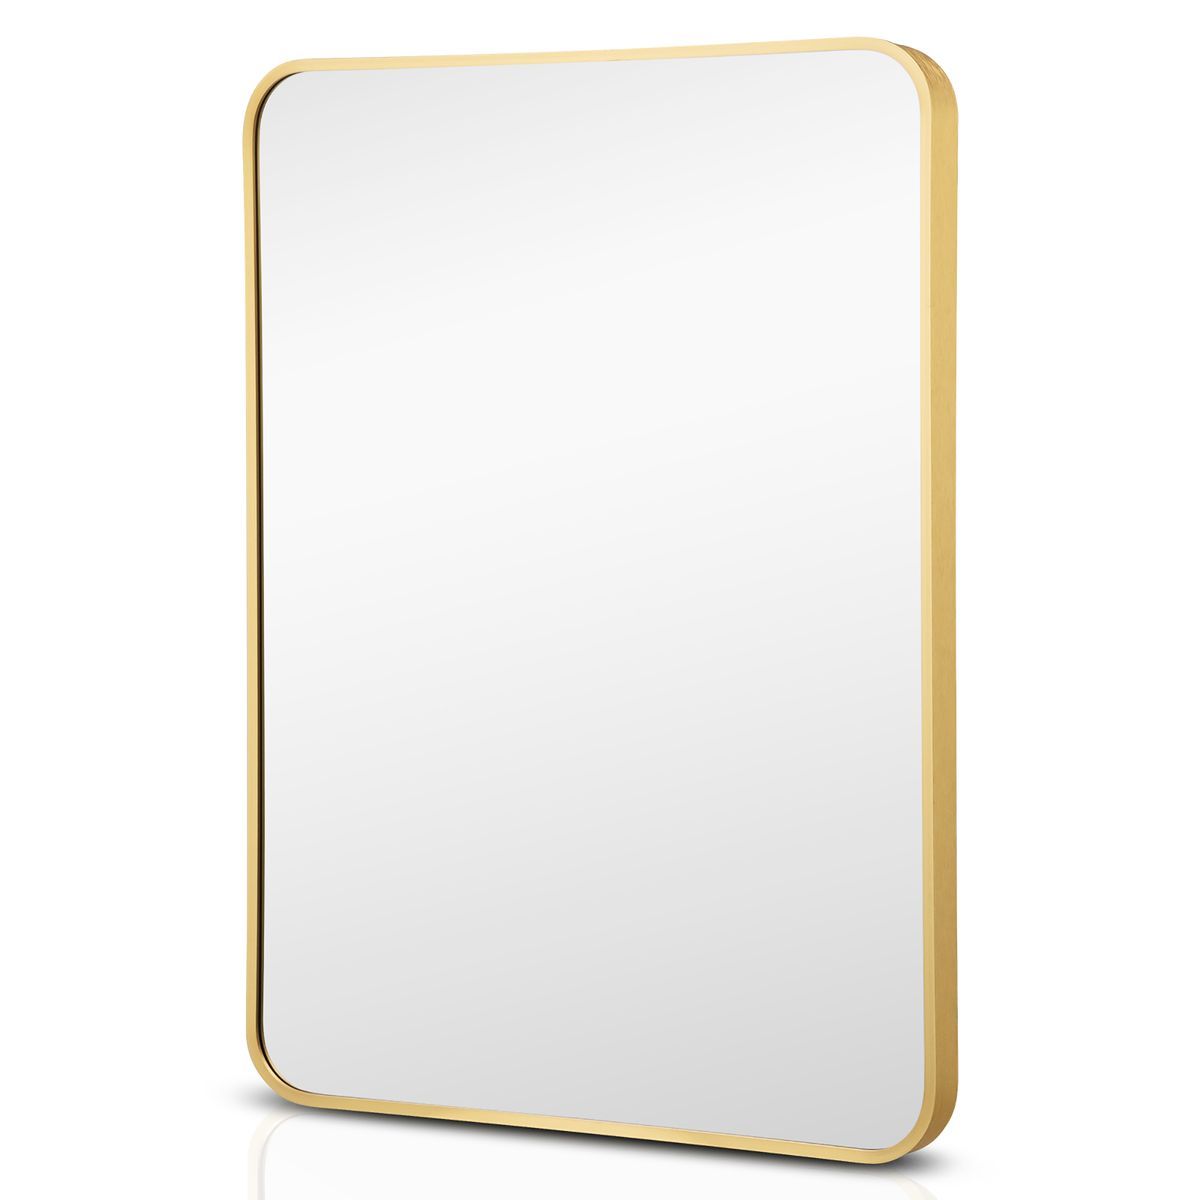 Photos - Wall Mirror Goplus GoPlus 22 x 30-inch Bathroom Wall Mounted Mirror - Gold JV10611GD